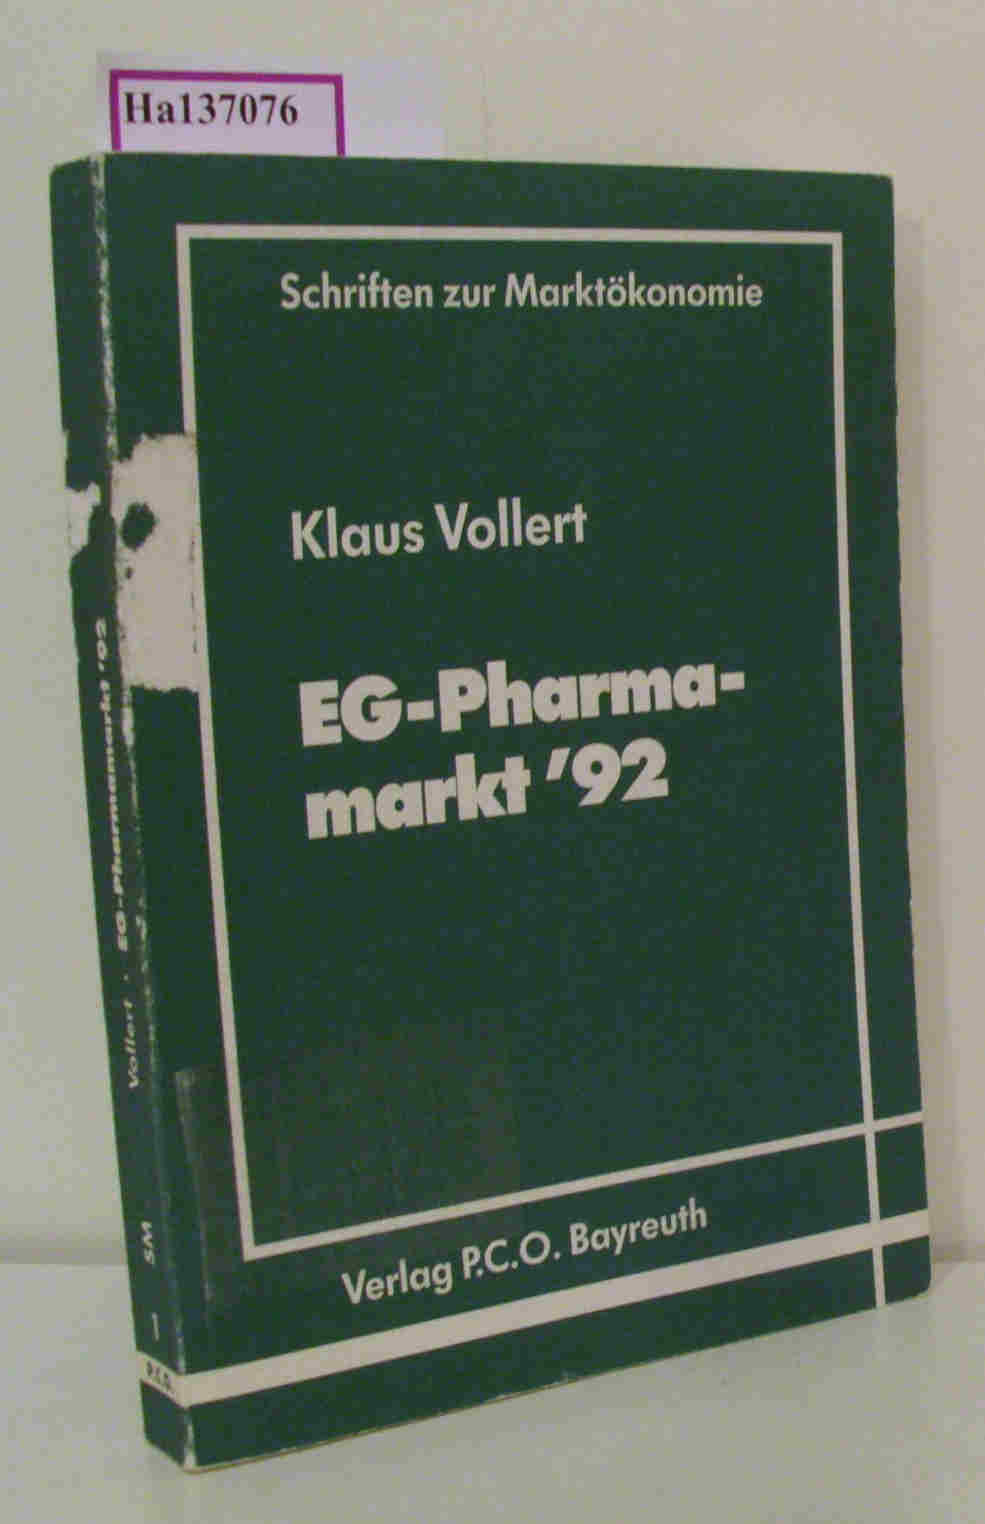 EG-Pharmamarkt '92. Strategisches Management im EG-Binnenmarkt, dargestellt am Beispiel der pharmazeutischen Industrie. (= Schriften zur Marktökonomie). - Vollert, Klaus